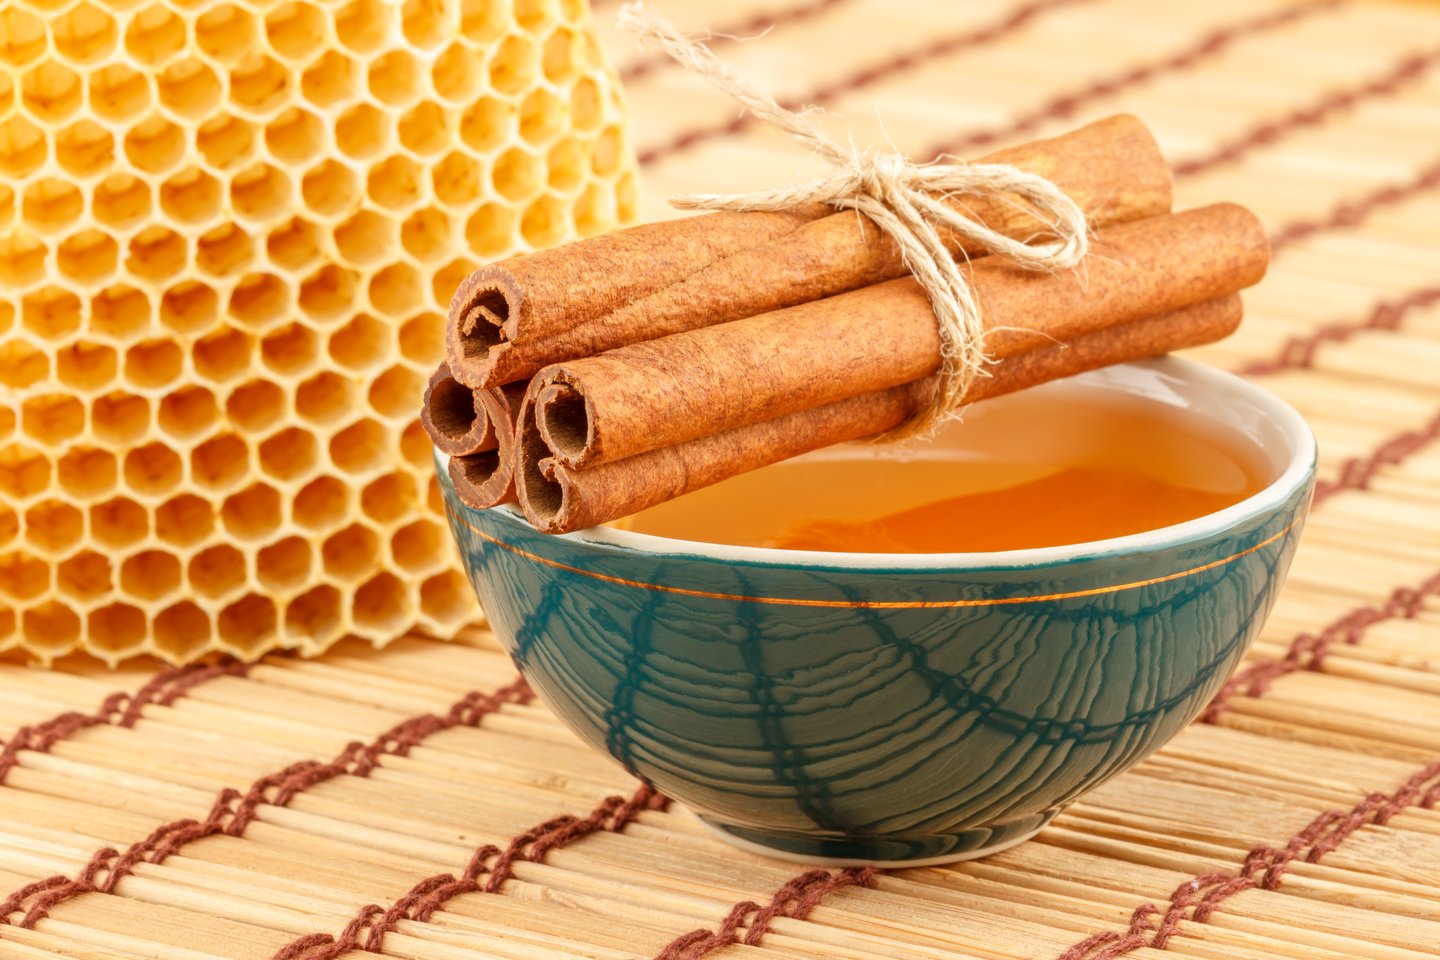  Medus ir cinamonas padeda palengvinti daugybę sveikatos sutrikimų. <br> 123rf nuotr. 